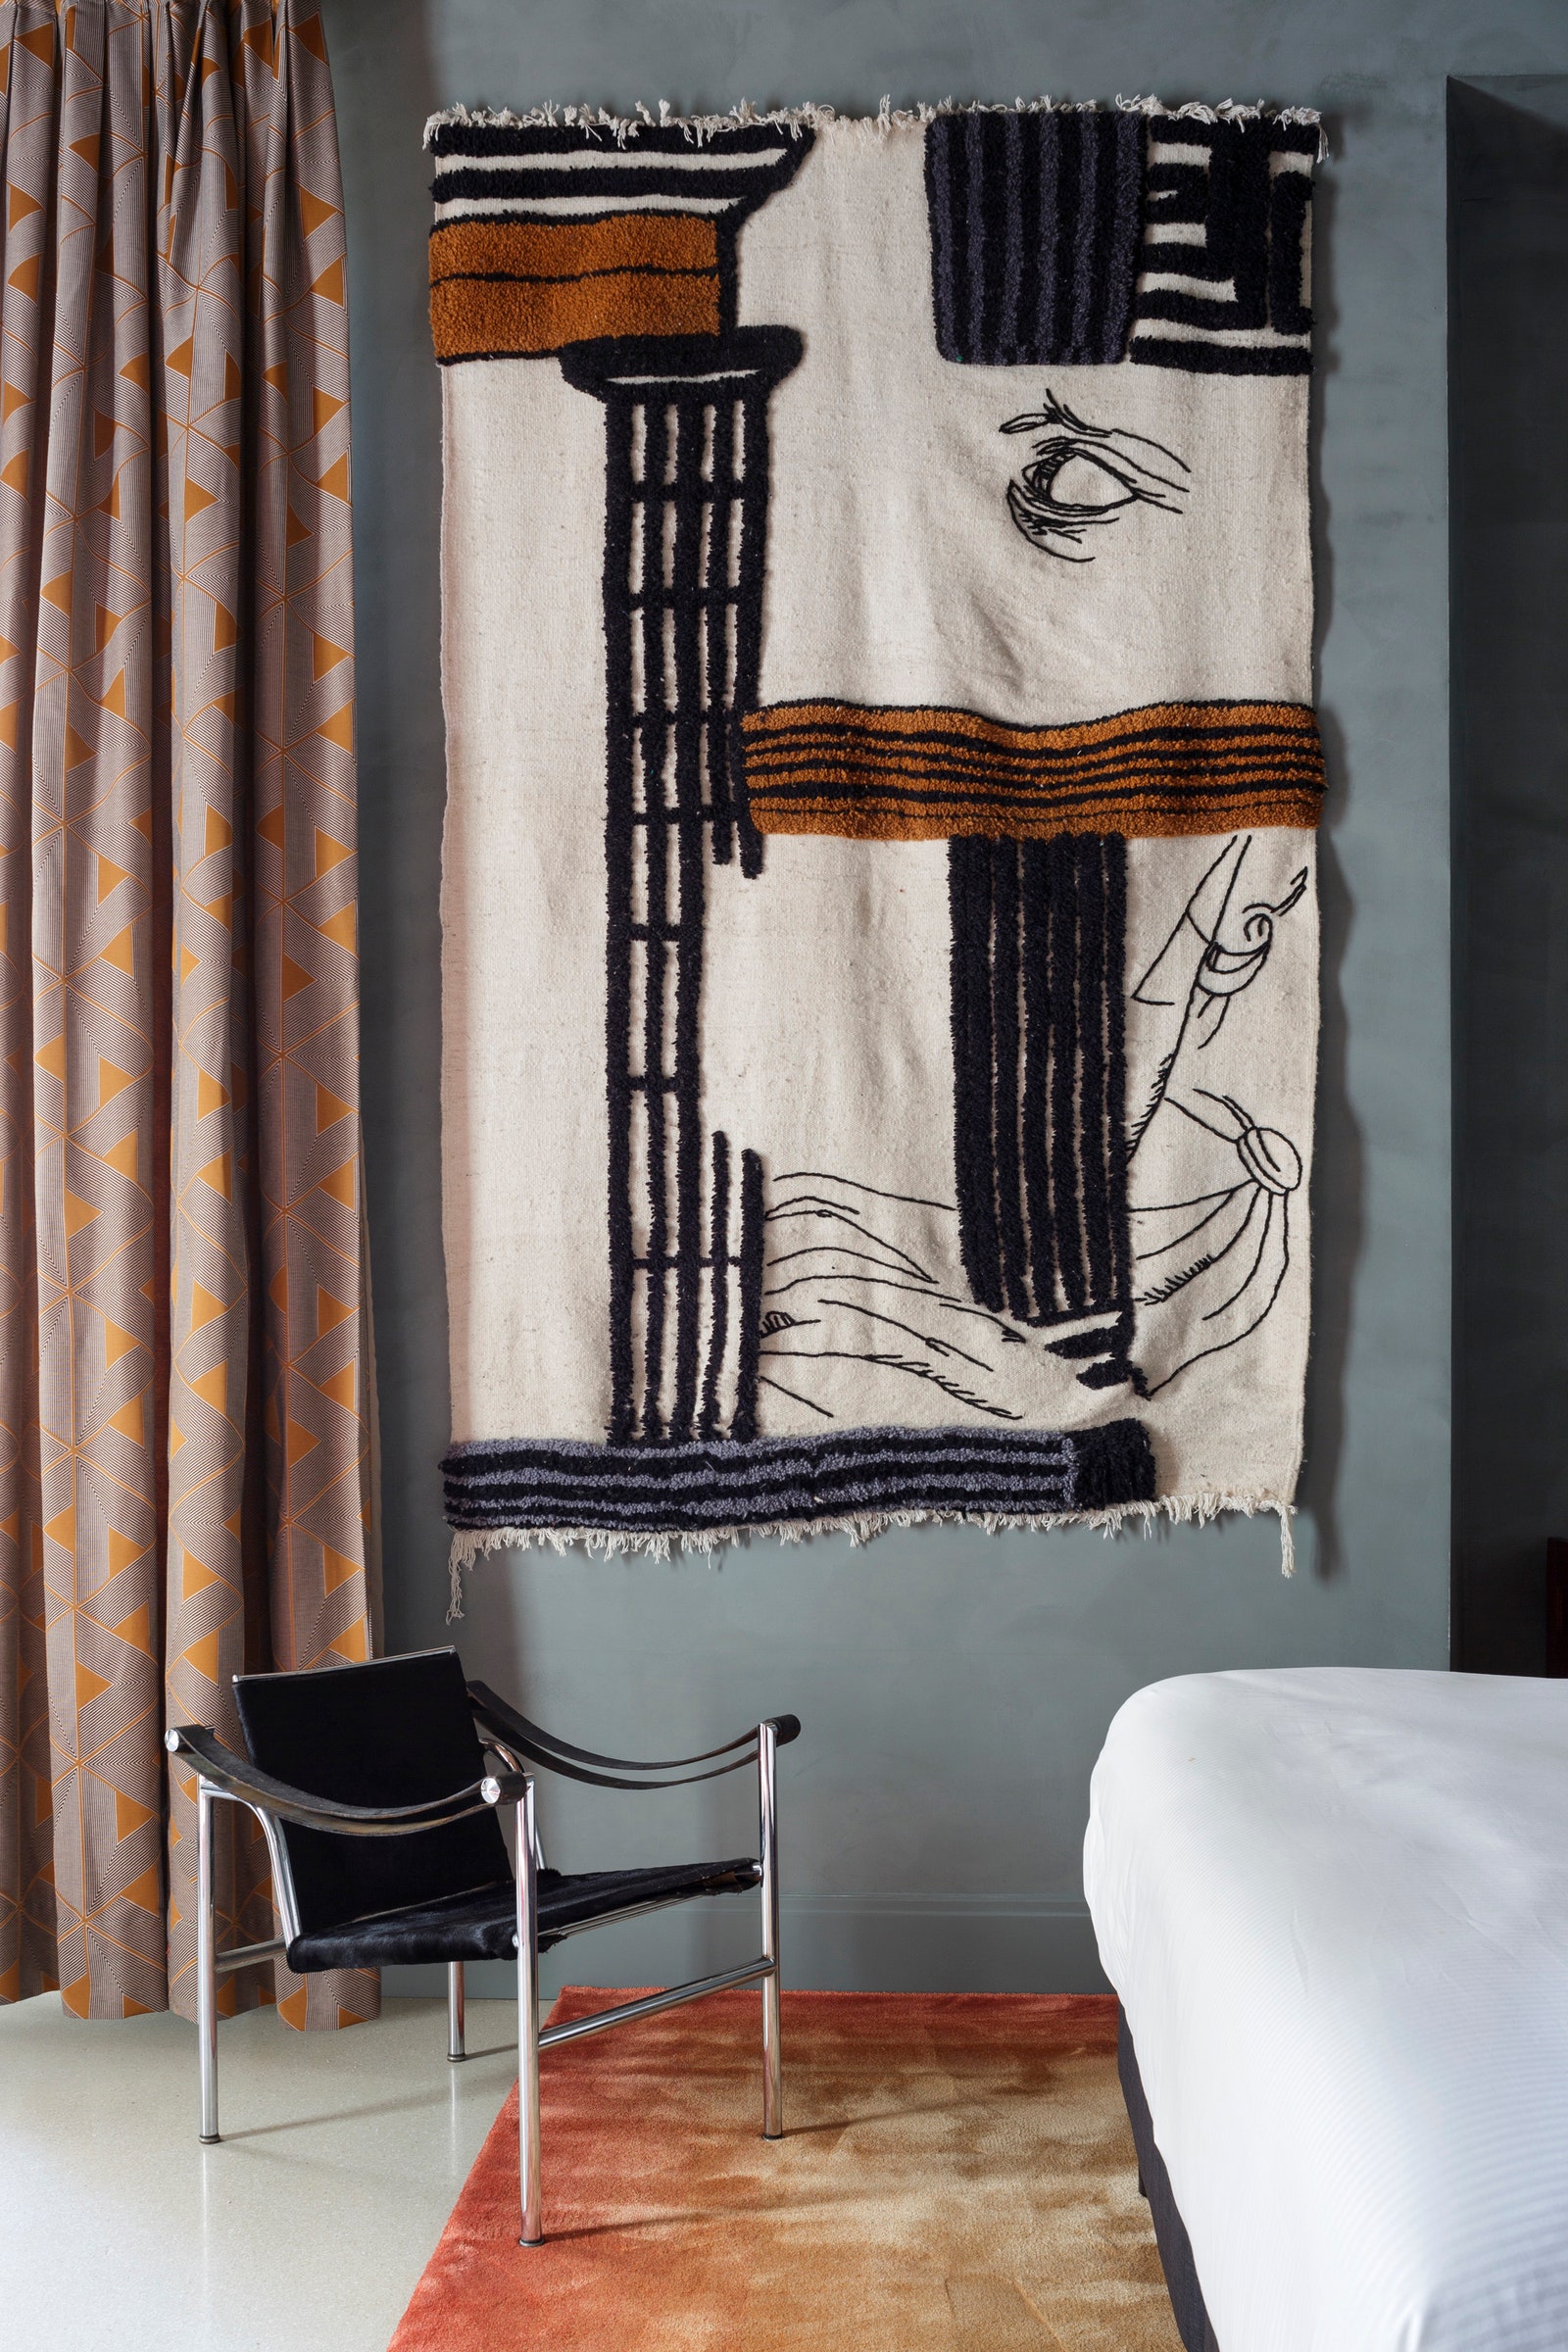 Спальня в номере 103 Volterra. Кресло Cassina на стене панно художника Халиля Минки шторы Casamance ковер Ferreira de S.